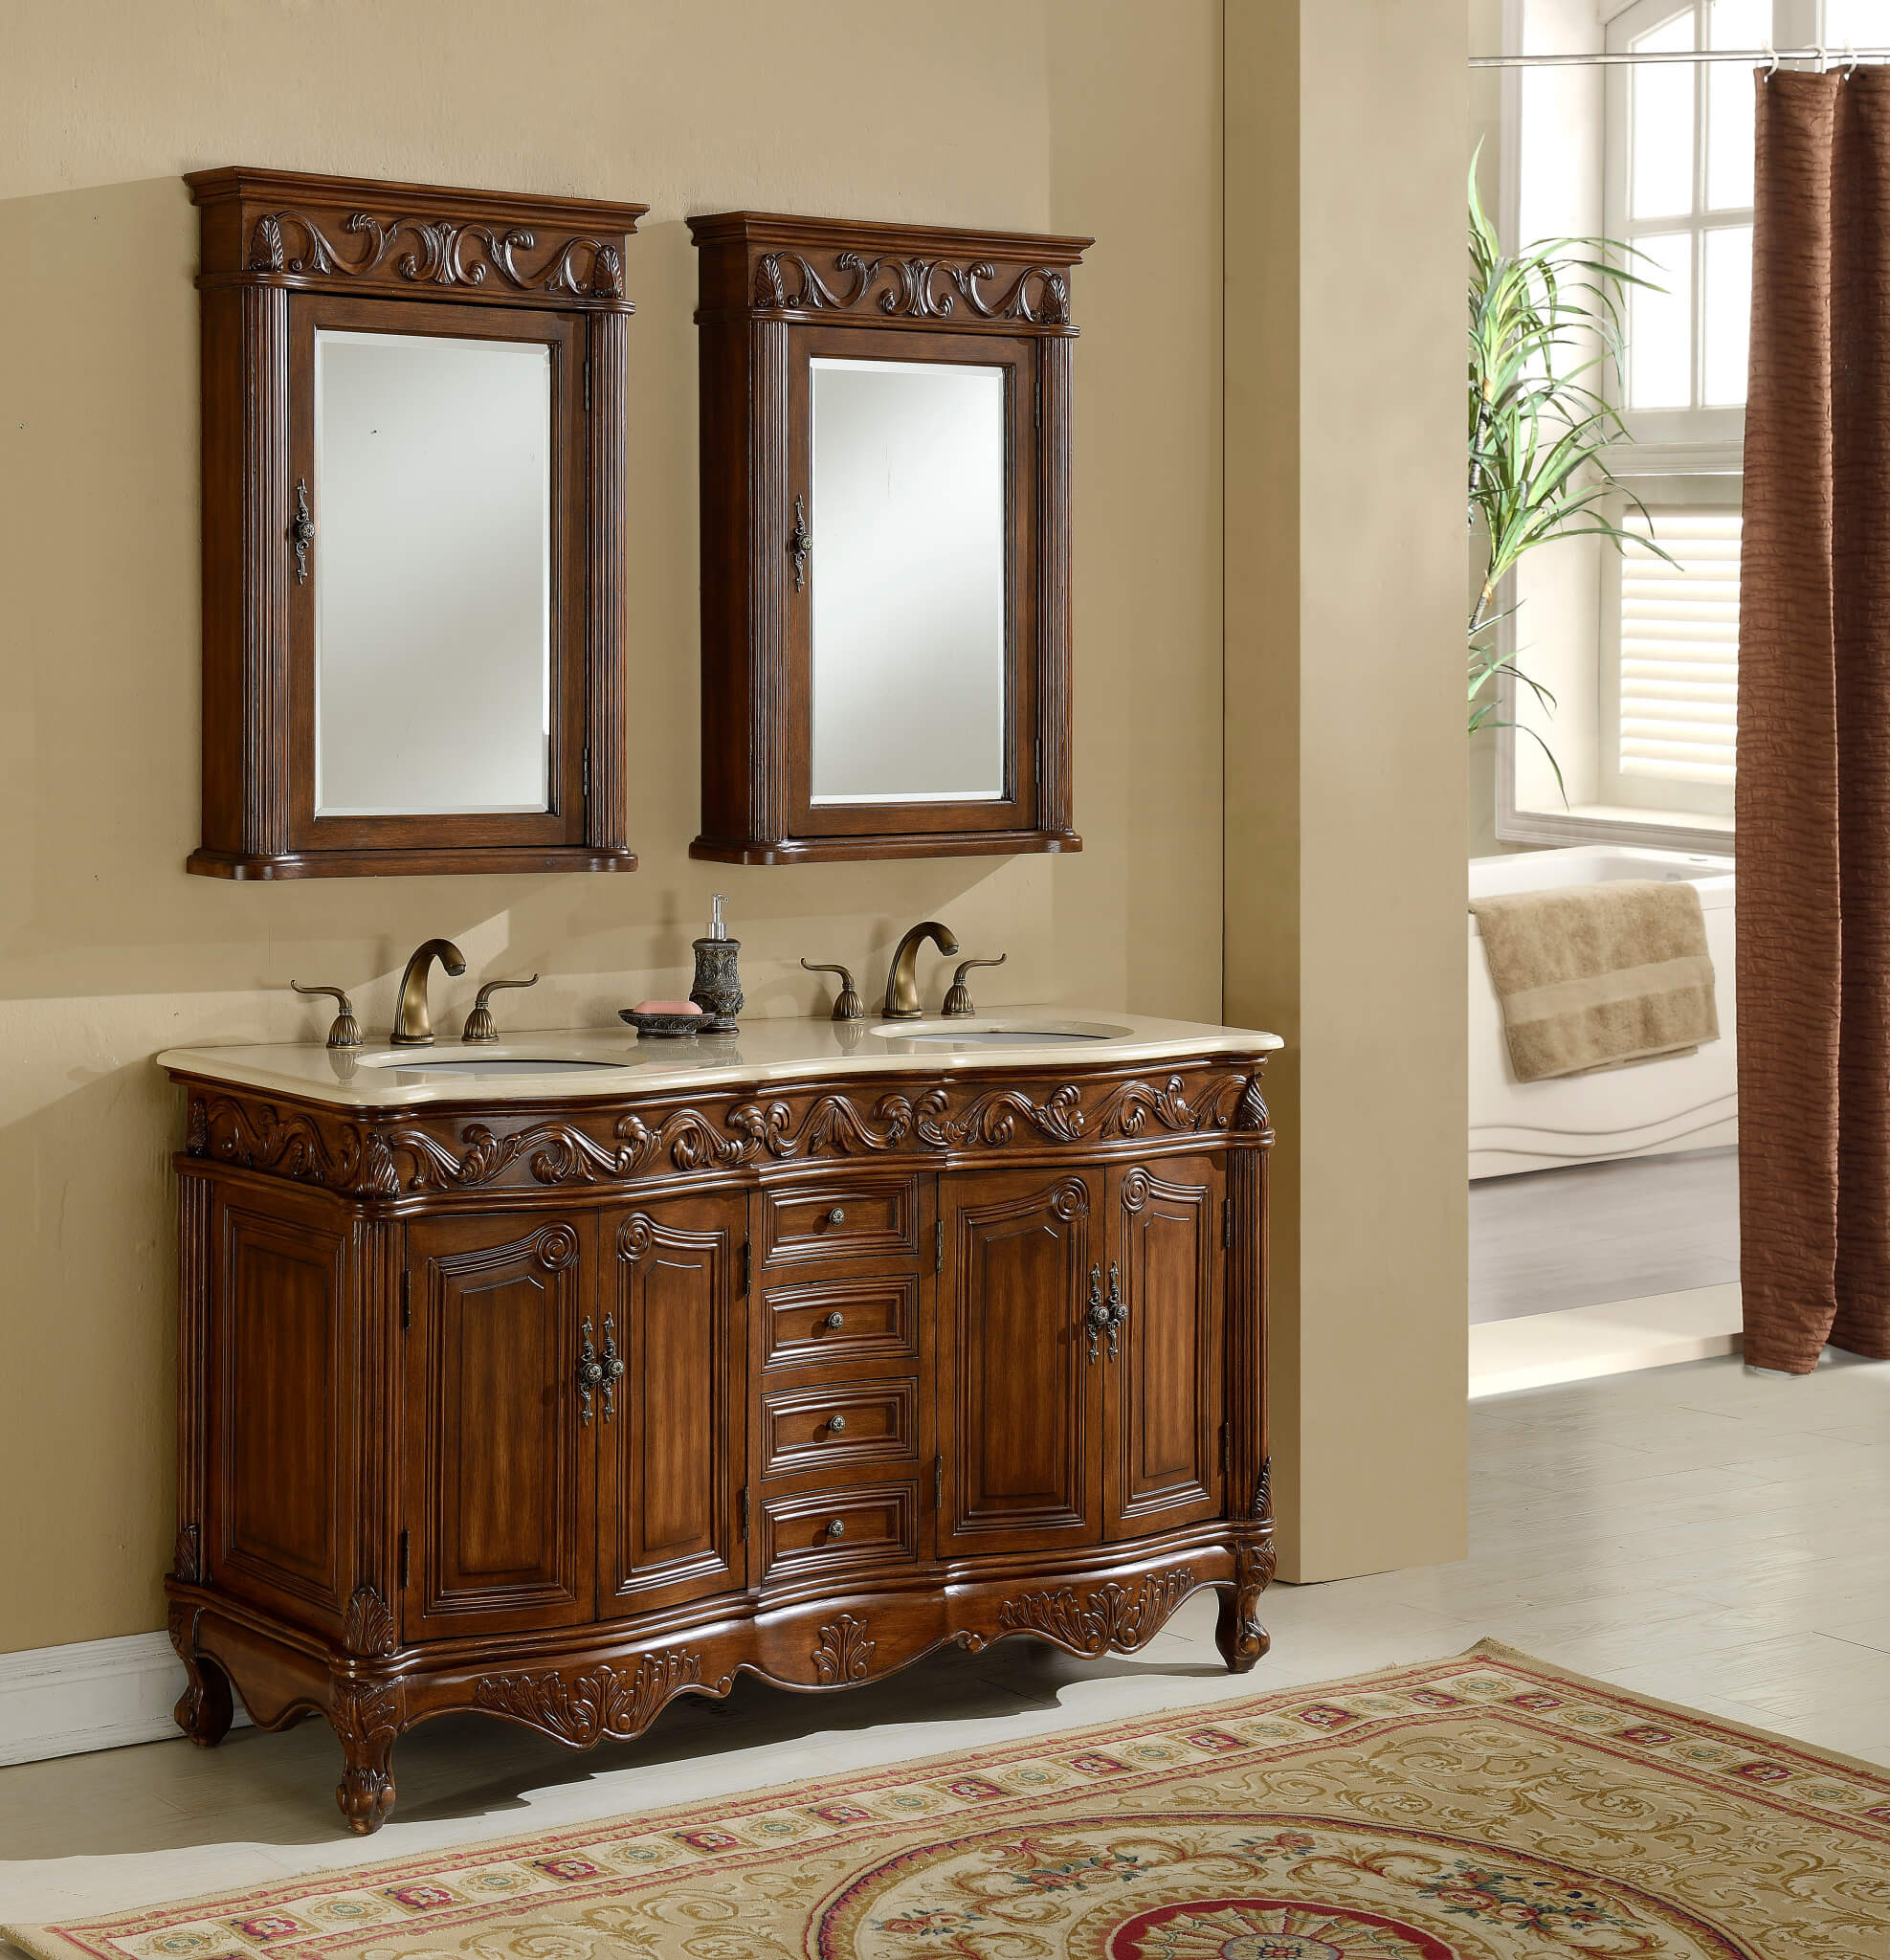 Rustic Double Bathroom Vanity
 33 Stunning Rustic Bathroom Vanity Ideas Remodeling Expense